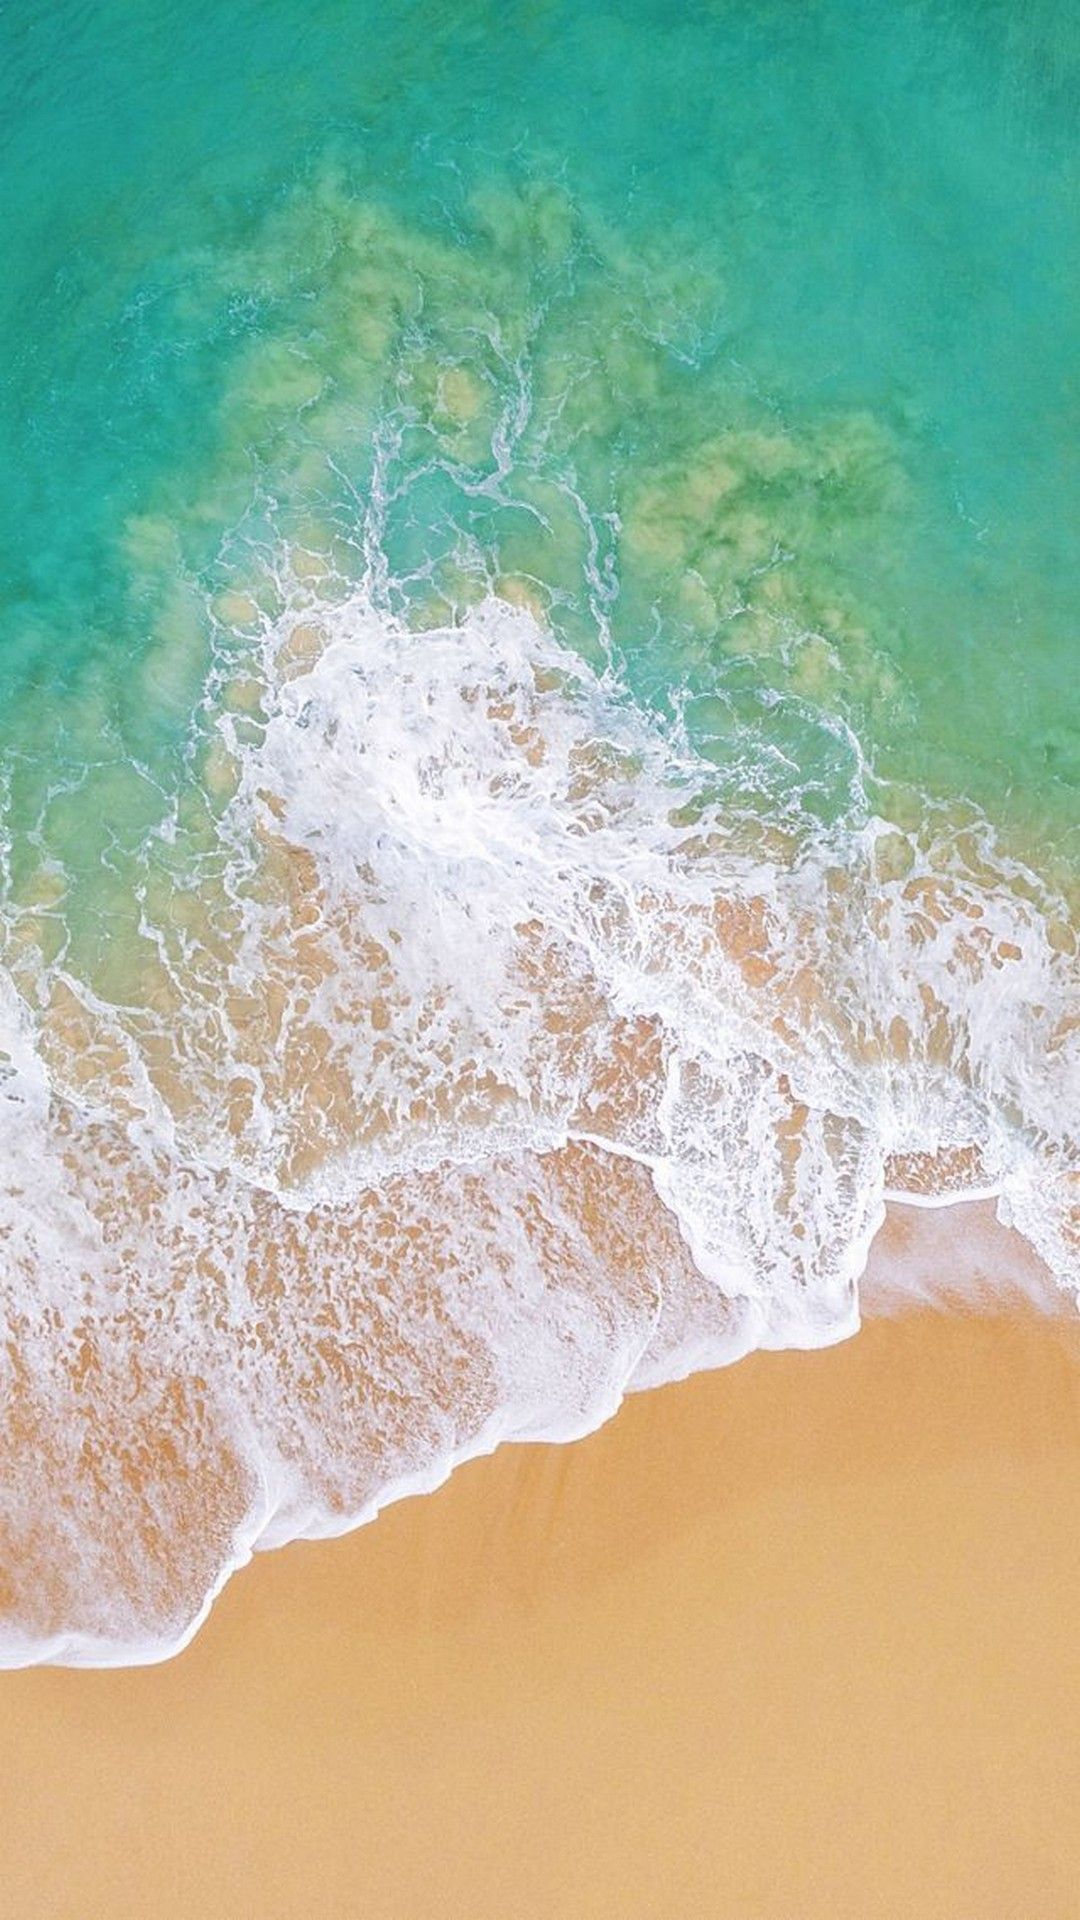 Apple Iphone Wallpaper Beach - 720x1280 Wallpaper 